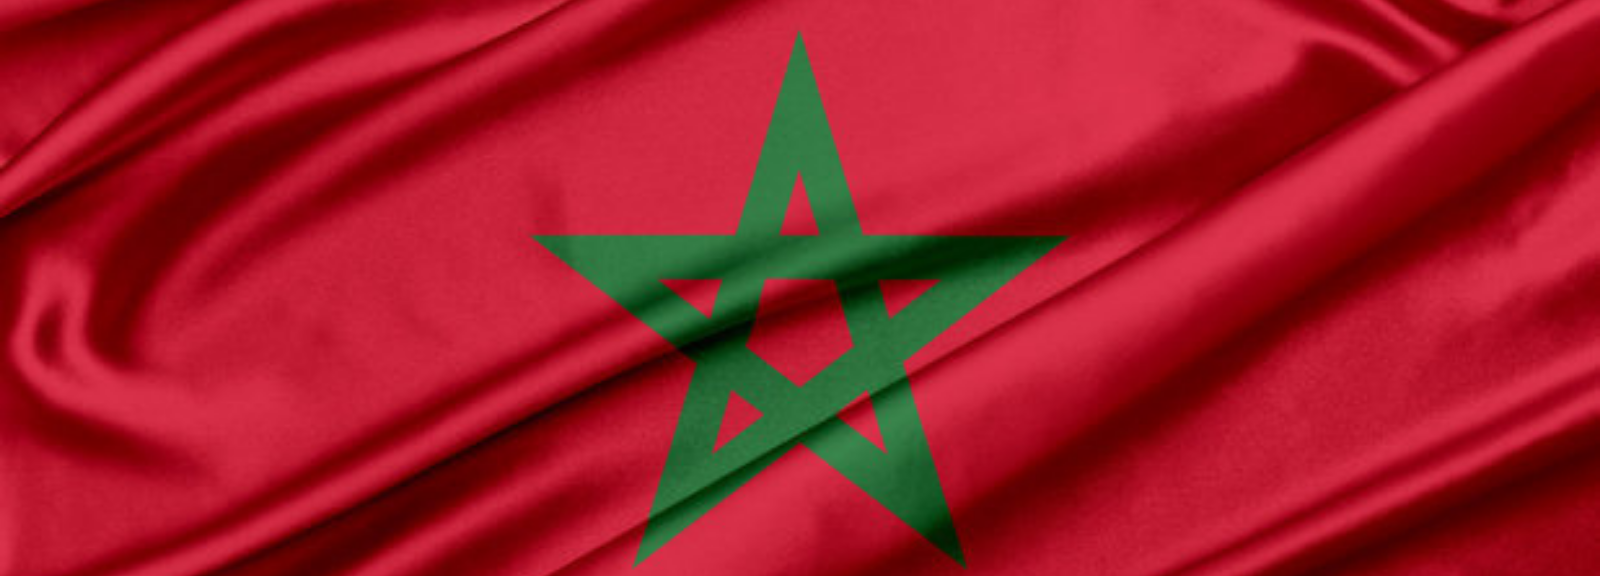 Moroccan flag.